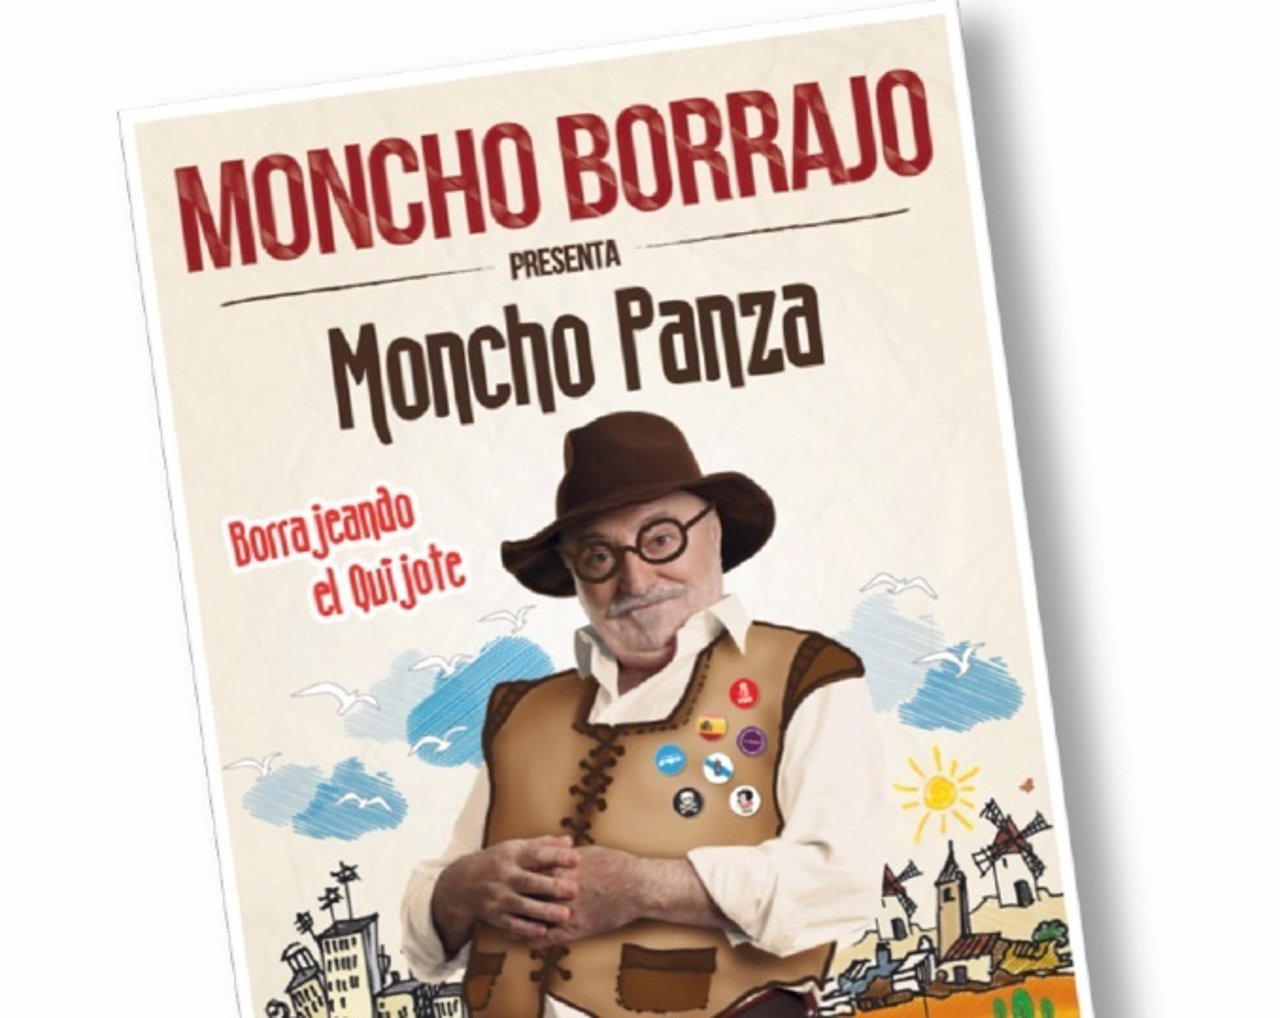 Cartel de la obra Moncho Panza, del cómico Moncho Borrajo